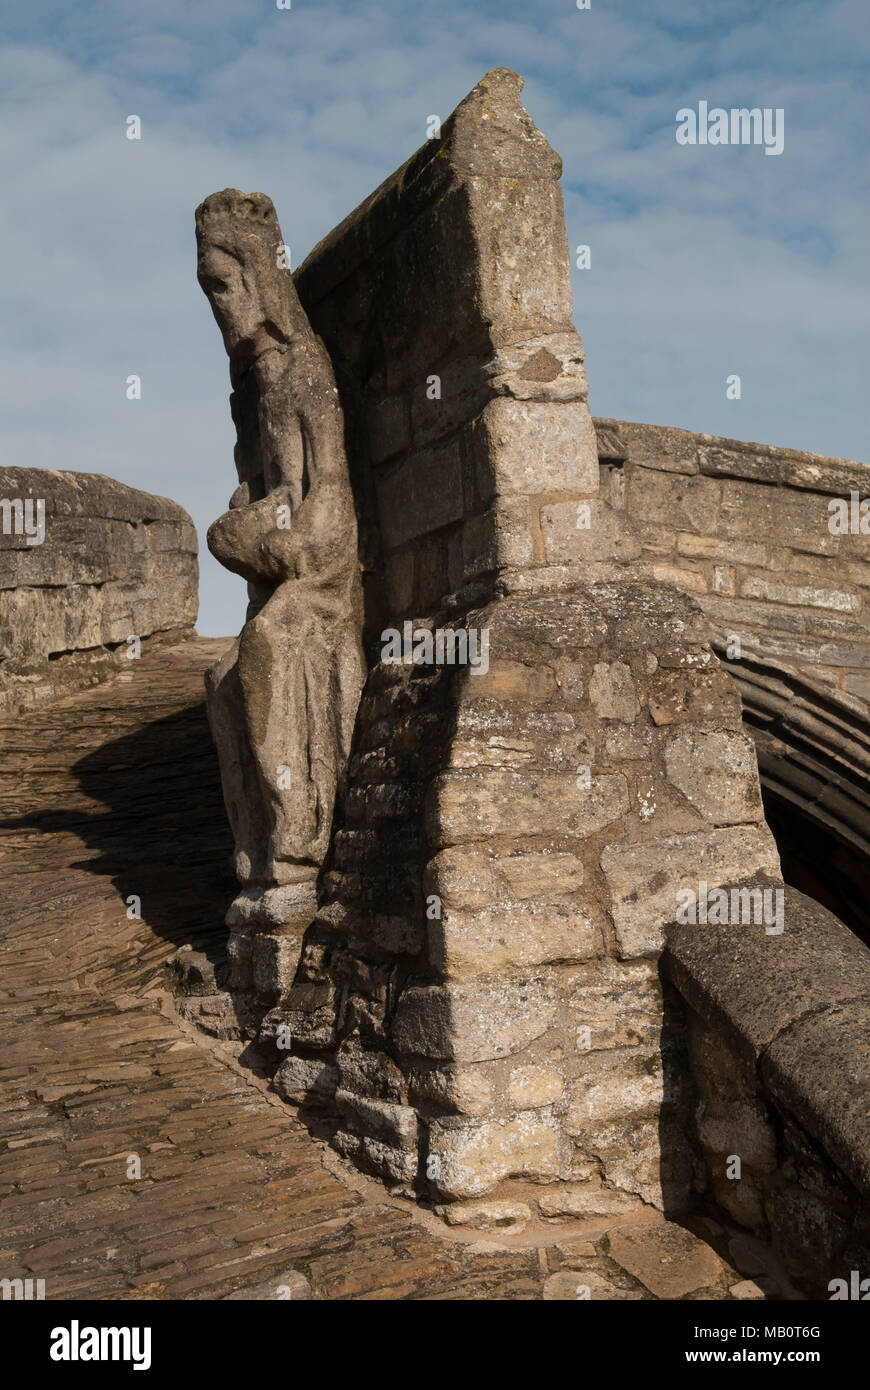 Crowland Trinity Bridge, Lincolnshire. Sculpture médiévale du Roi Ethelbald ou Æthelbald Roi de MERCIE. À l'origine sur l'abbaye mais est tombée il y a longtemps et repositionné sur le célèbre pont. HOMER SYKES Banque D'Images